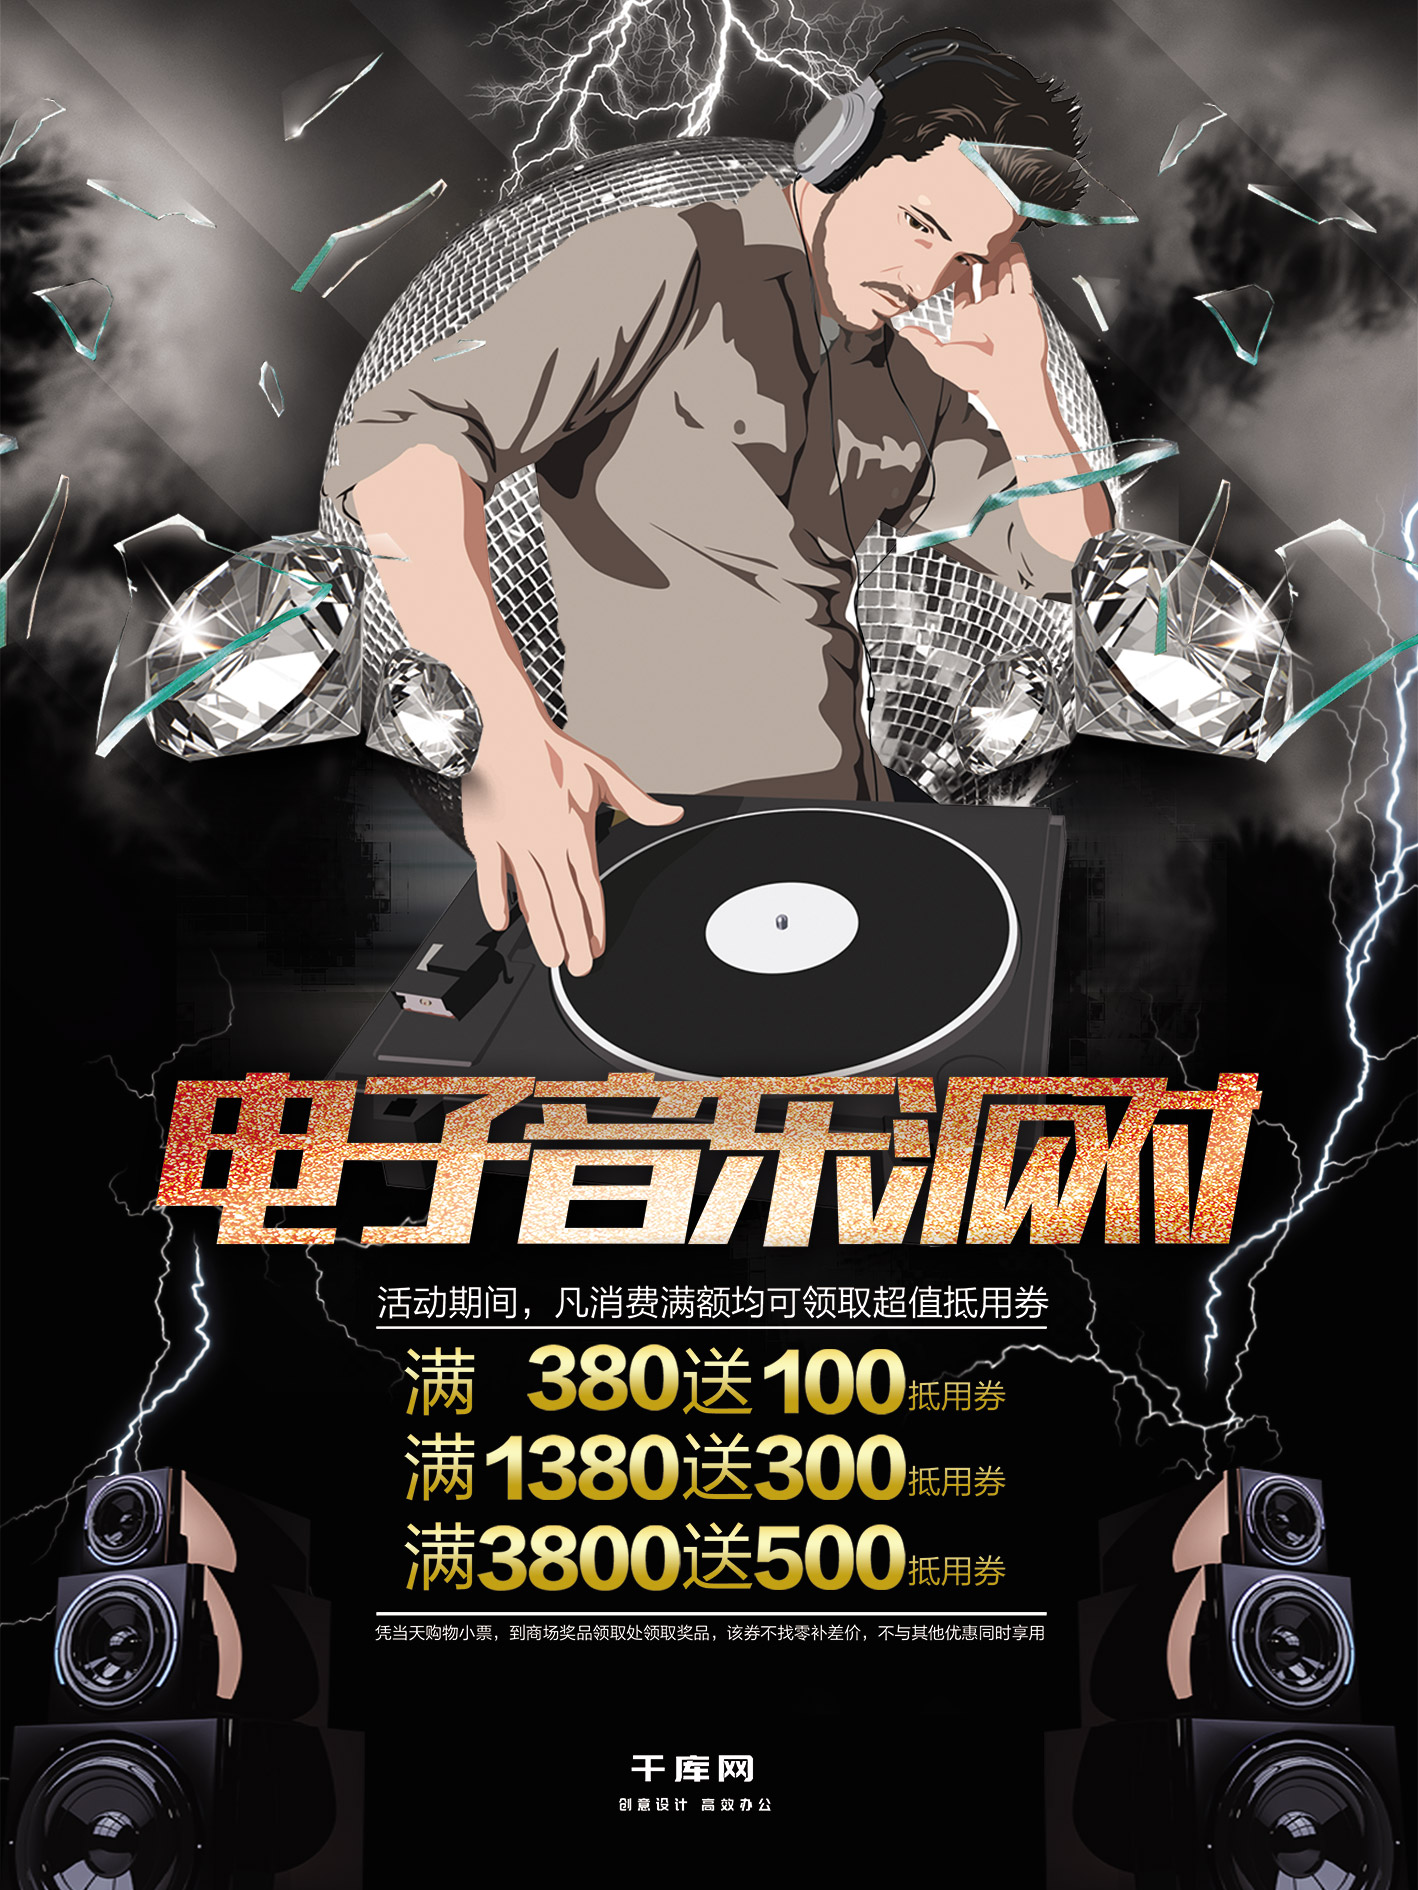 电子音乐酒吧派对炫酷宣传促销海报图片